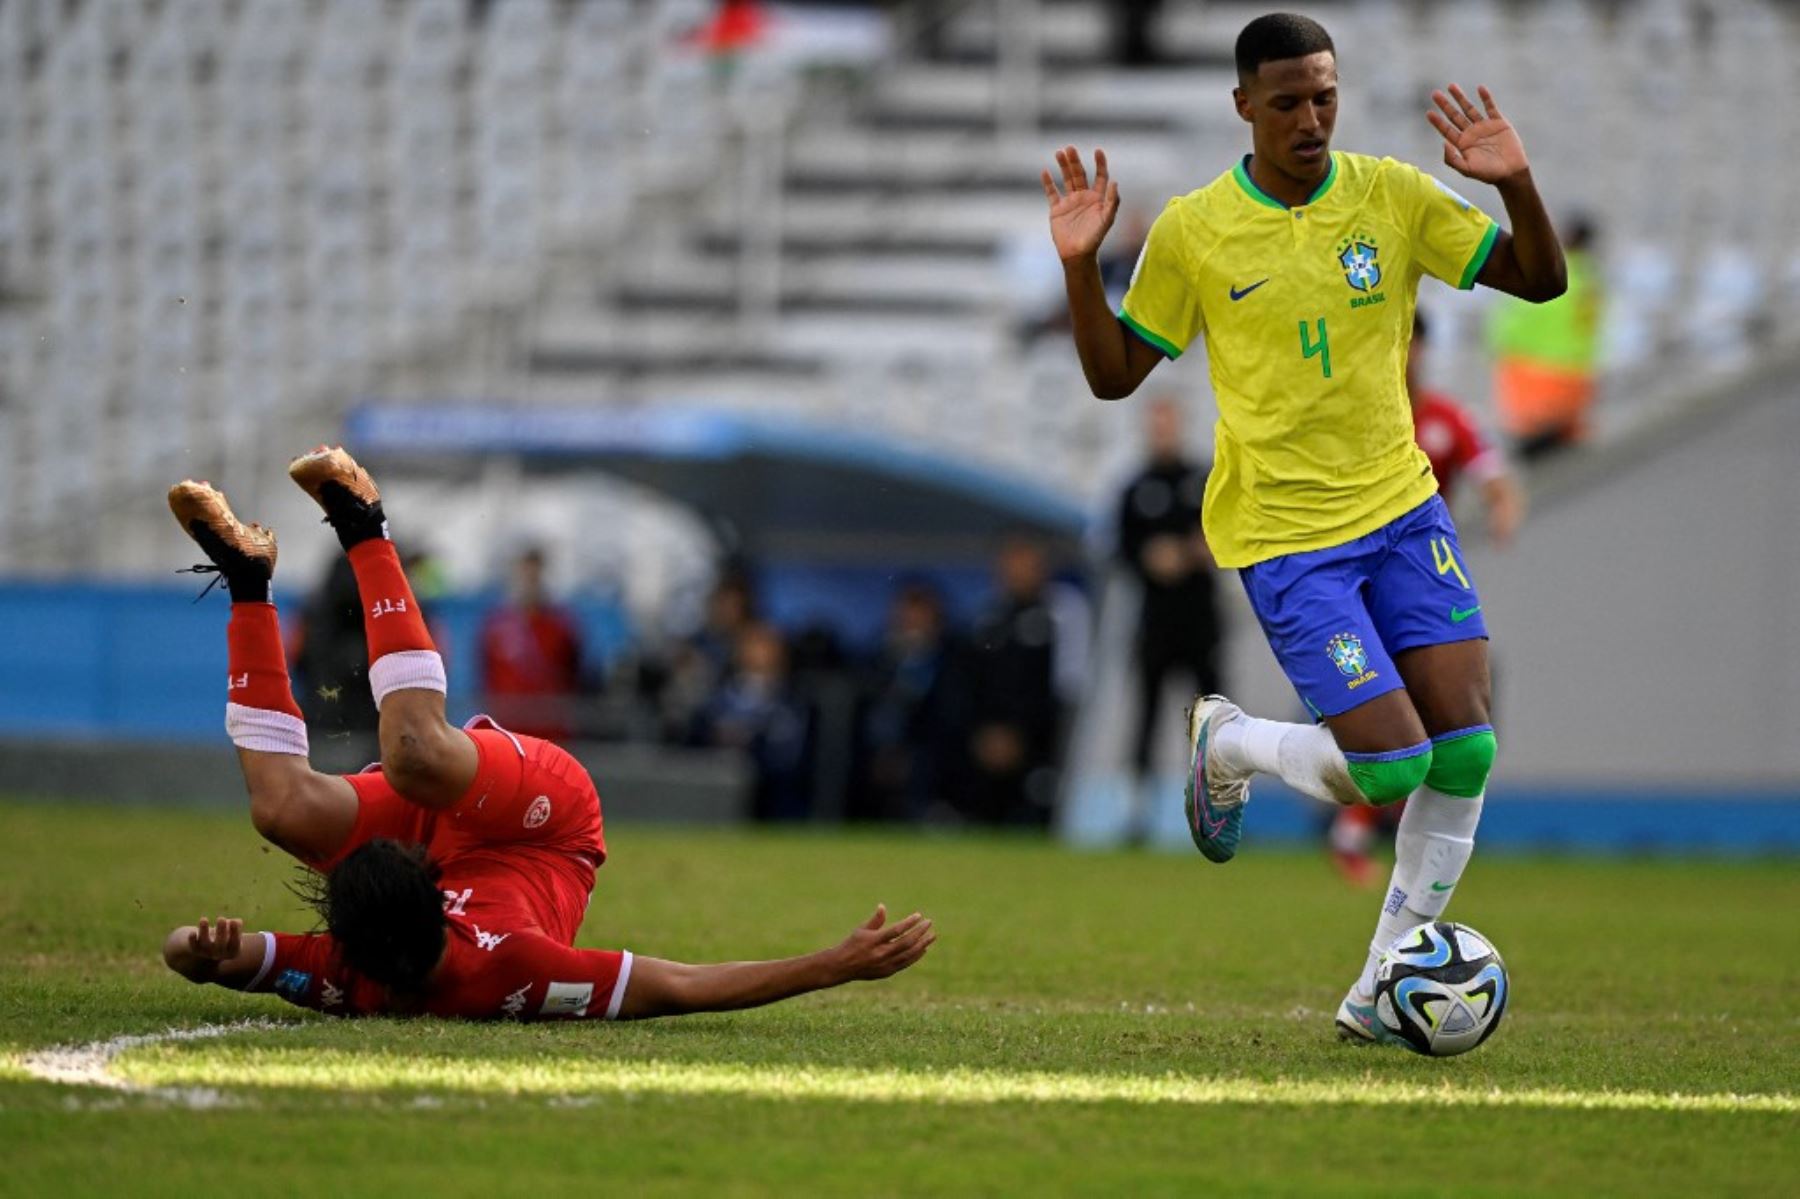 Robert Renan recibió insultos racistas durante el partido ante Túnez por el Mundial Sub-20, que se juega en Argentina